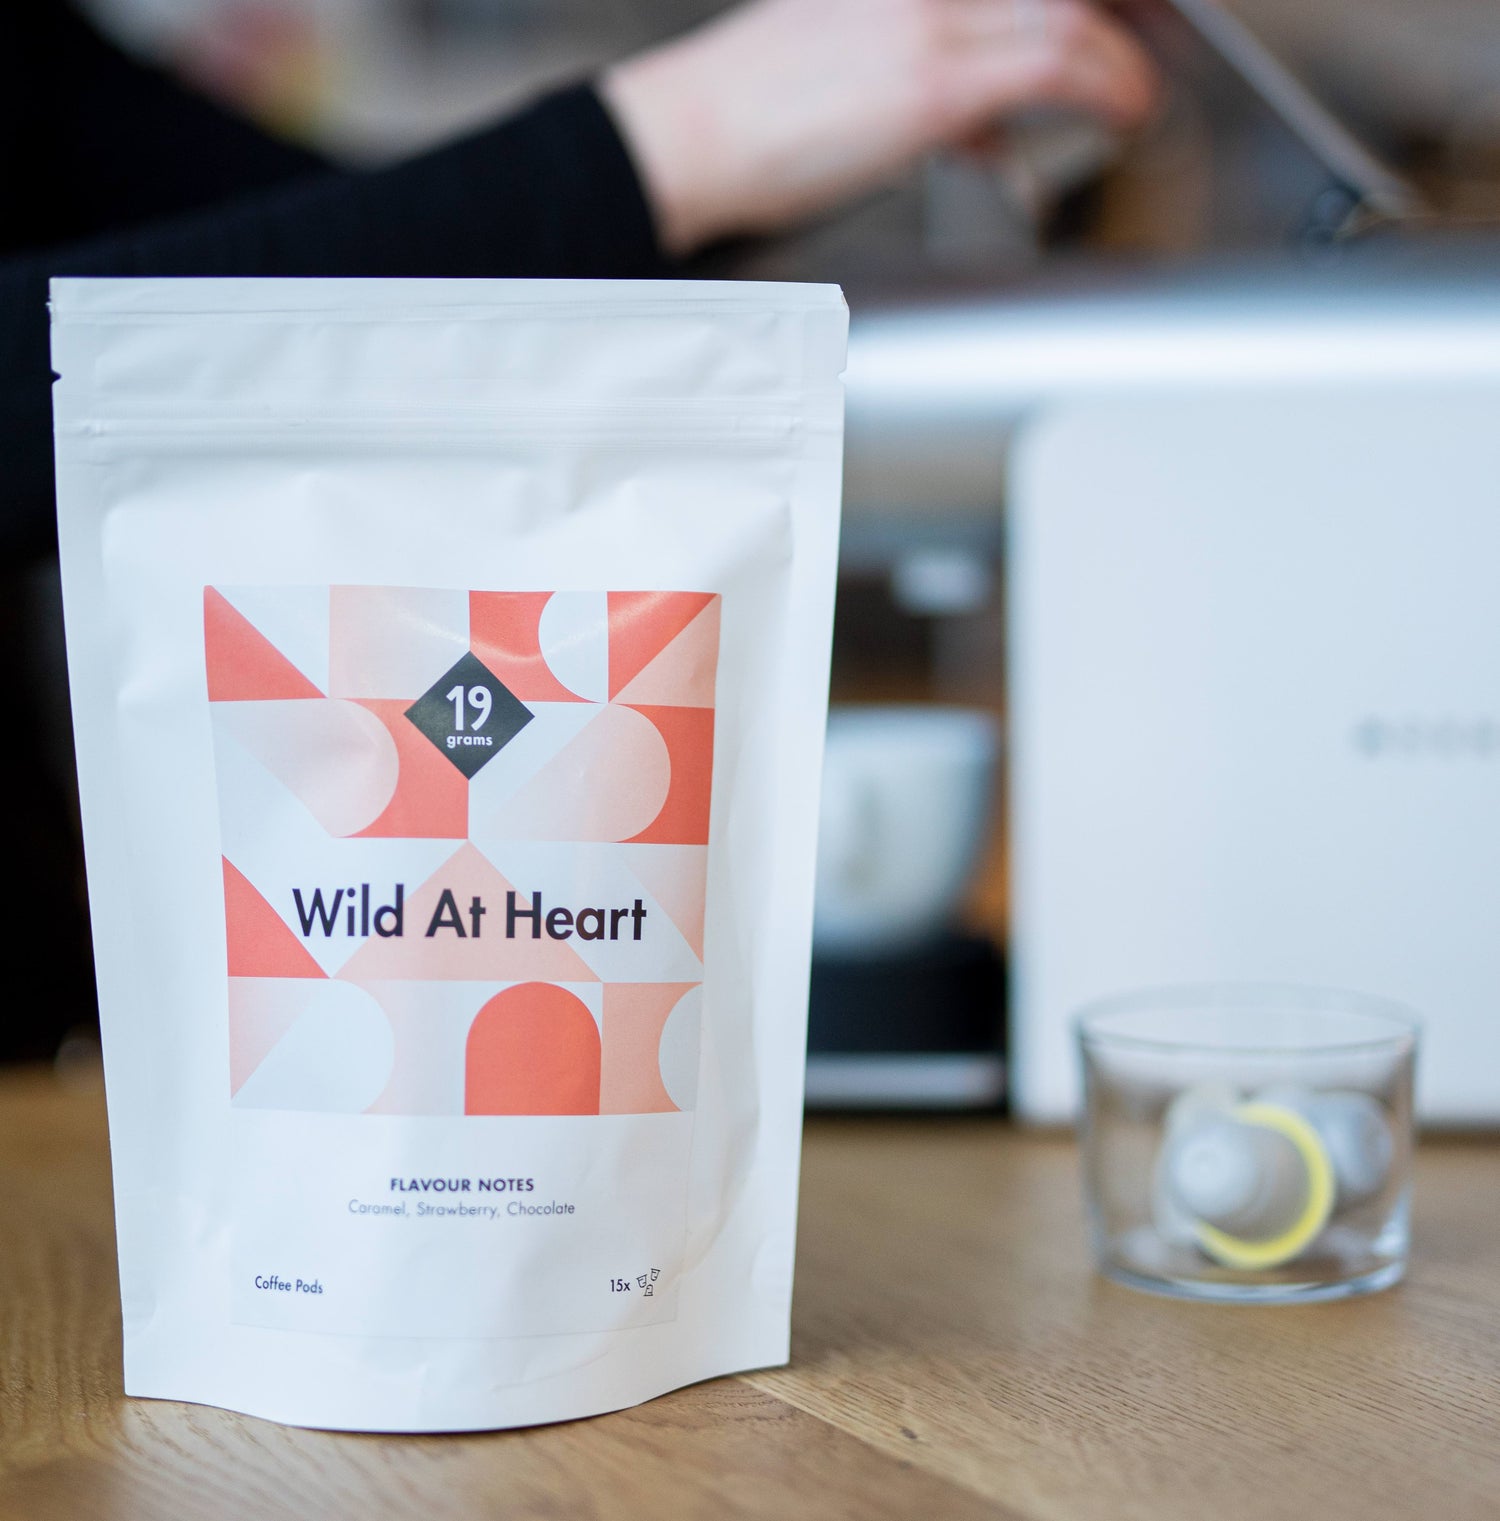 19grams Wild At Heart Pods Kaffeetüte